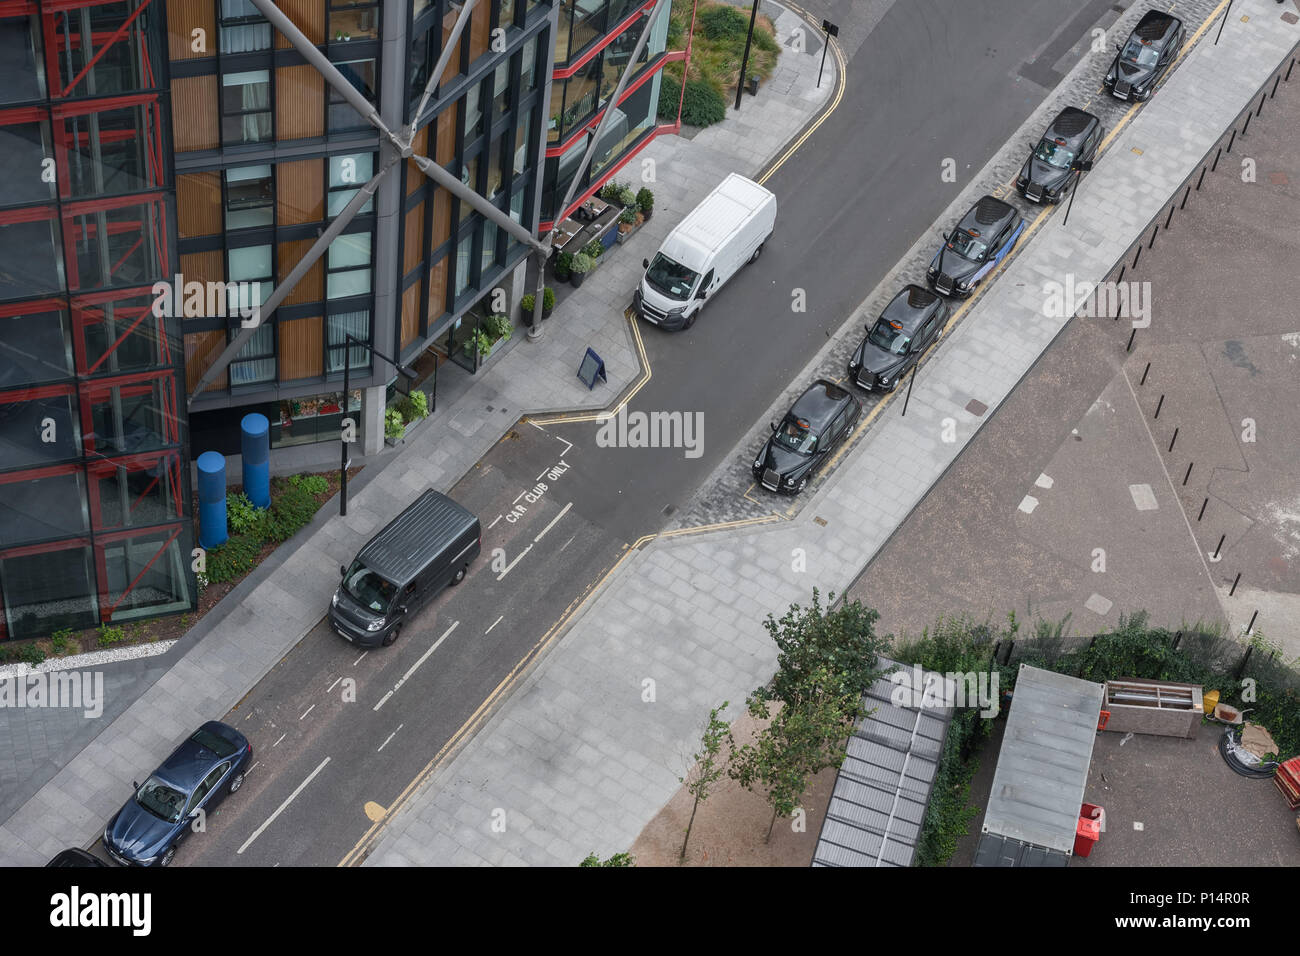 Les taxis noirs de Londres parking en face de l'immeuble, vue de dessus. Banque D'Images